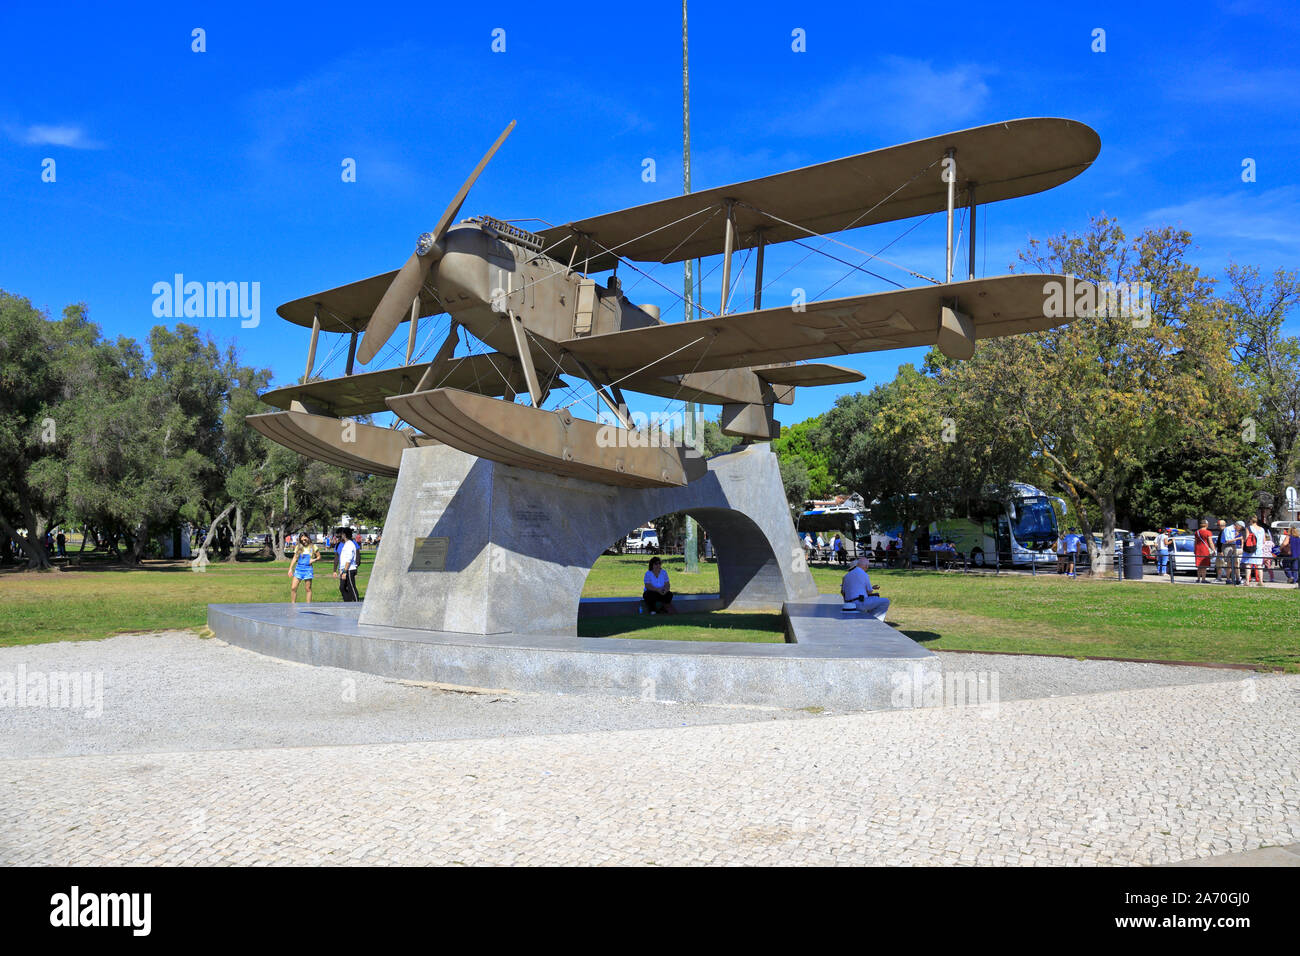 Monument à Sacadura Cabral et Gago Coutinho, première traversée de l'Atlantique sud, Monument Gago Coutinho e Sacadura Cabral, Belém, Lisbonne, Portugal. Banque D'Images